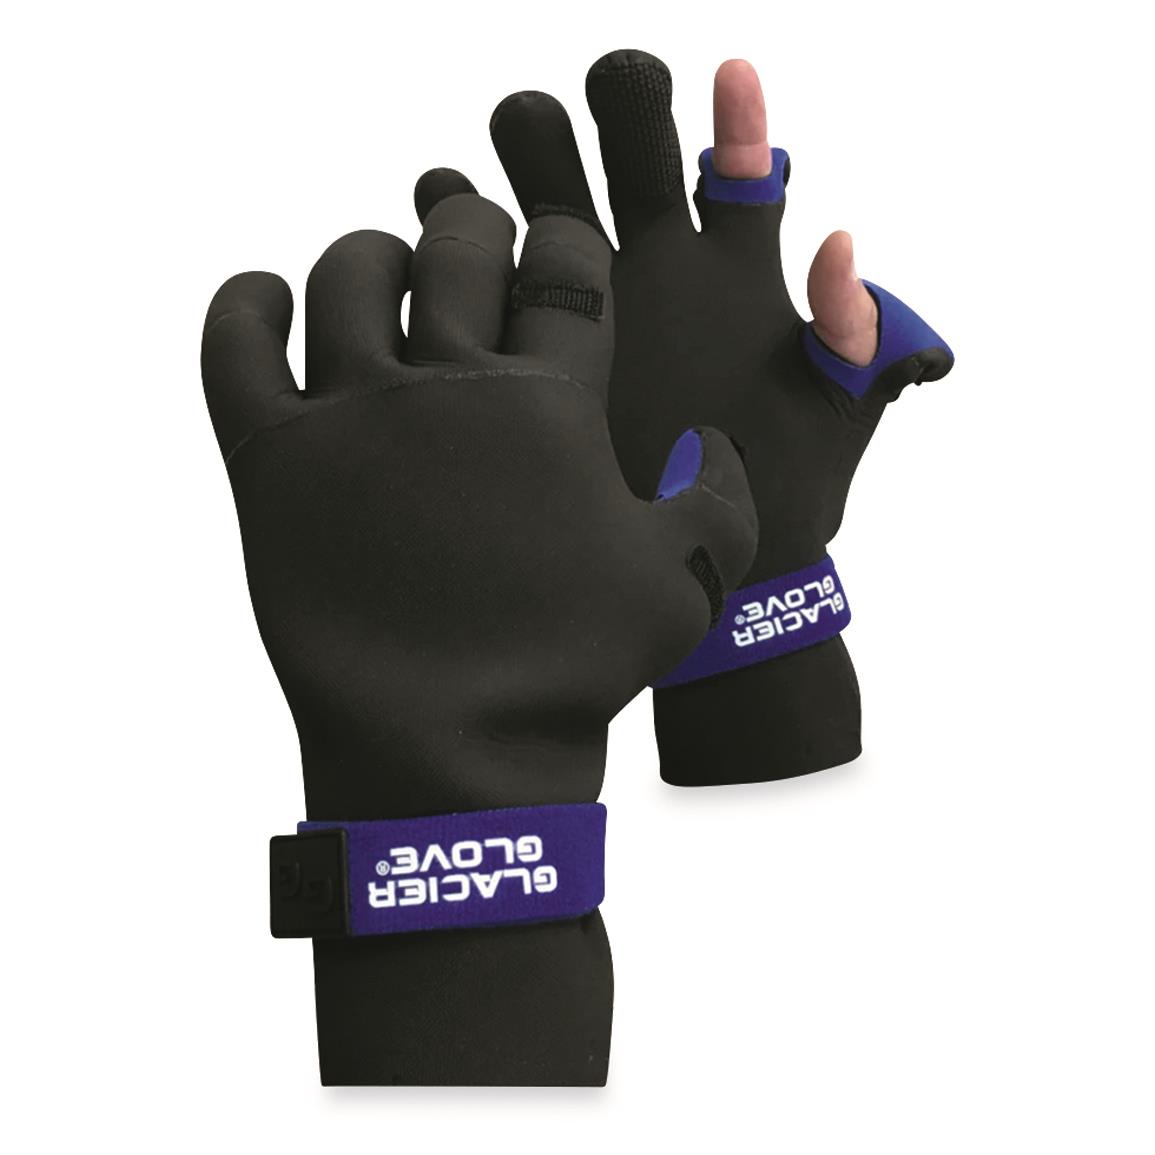 Glacier Glove Pro Angler Fishing Gloves, Black